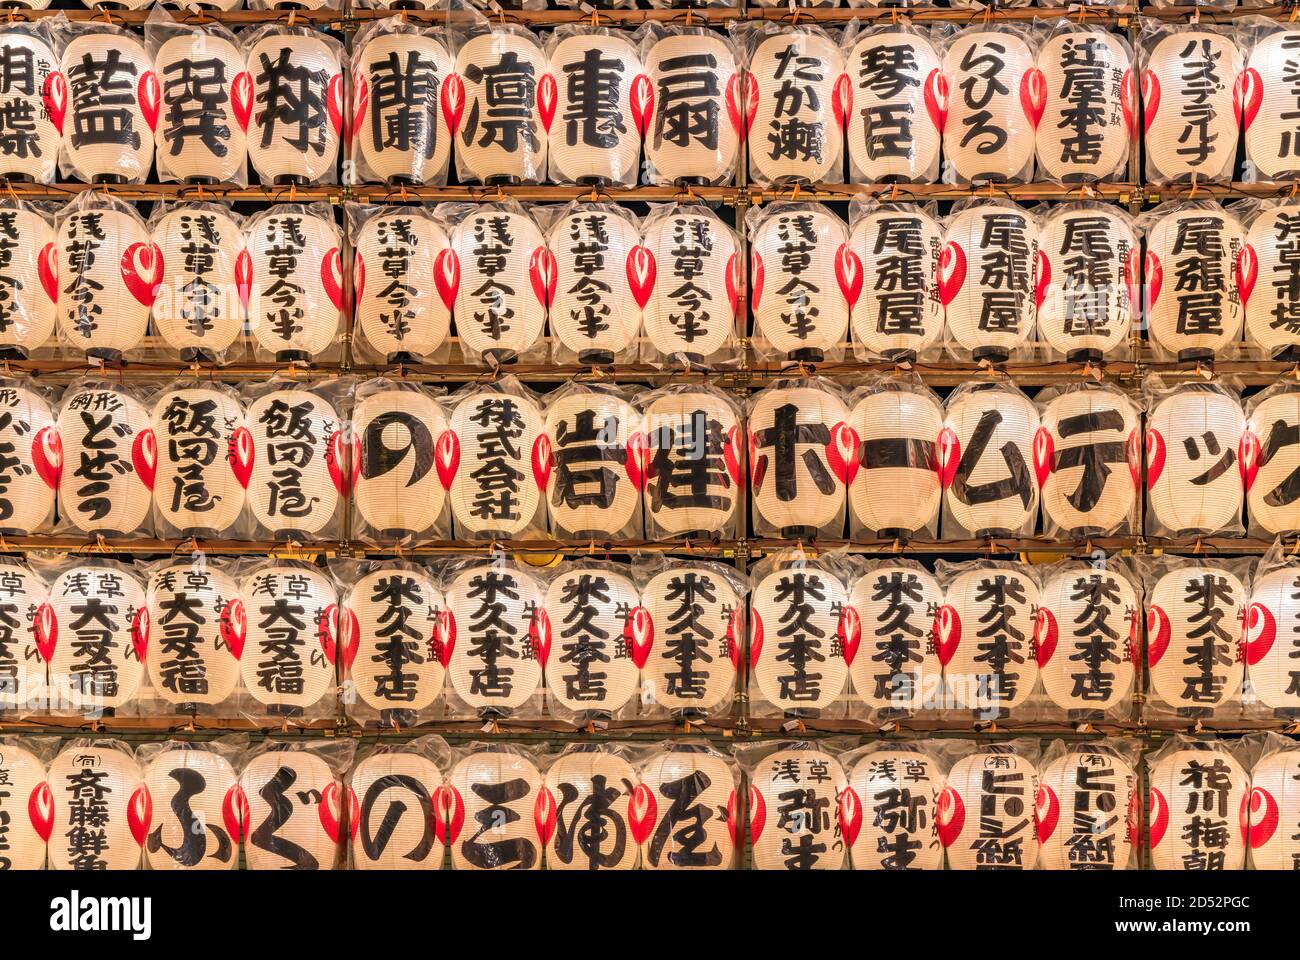 asakusa, japan - november 08 2019: Nahaufnahme einer riesigen Wand aus leuchtenden japanischen Papierlaternen, die mit den handschriftlichen Namen von Gönnern und spo verziert sind Stockfoto